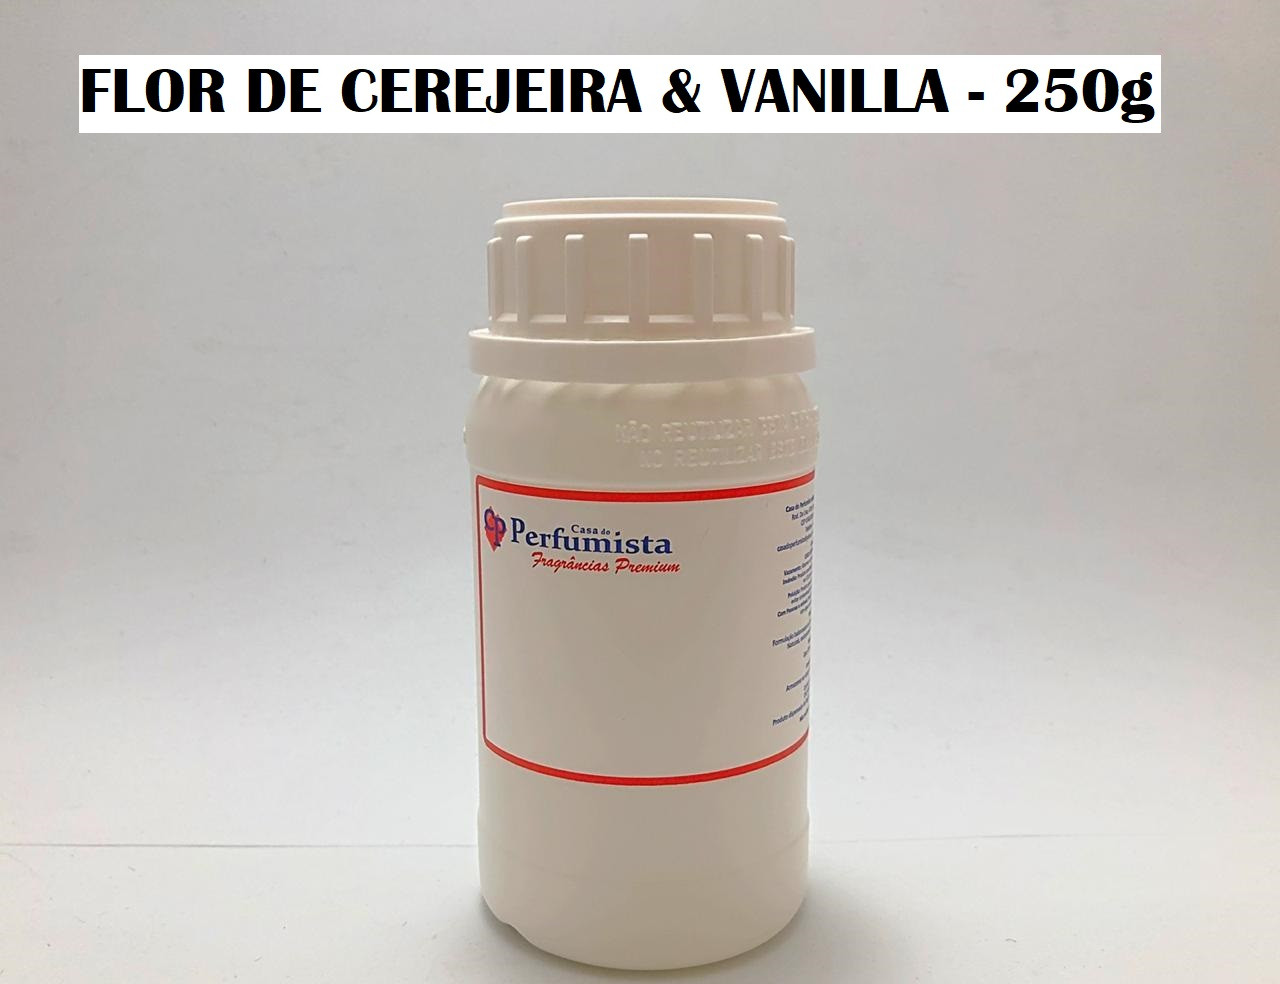 FLOR DE CEREJEIRA E VANILLA - 250g